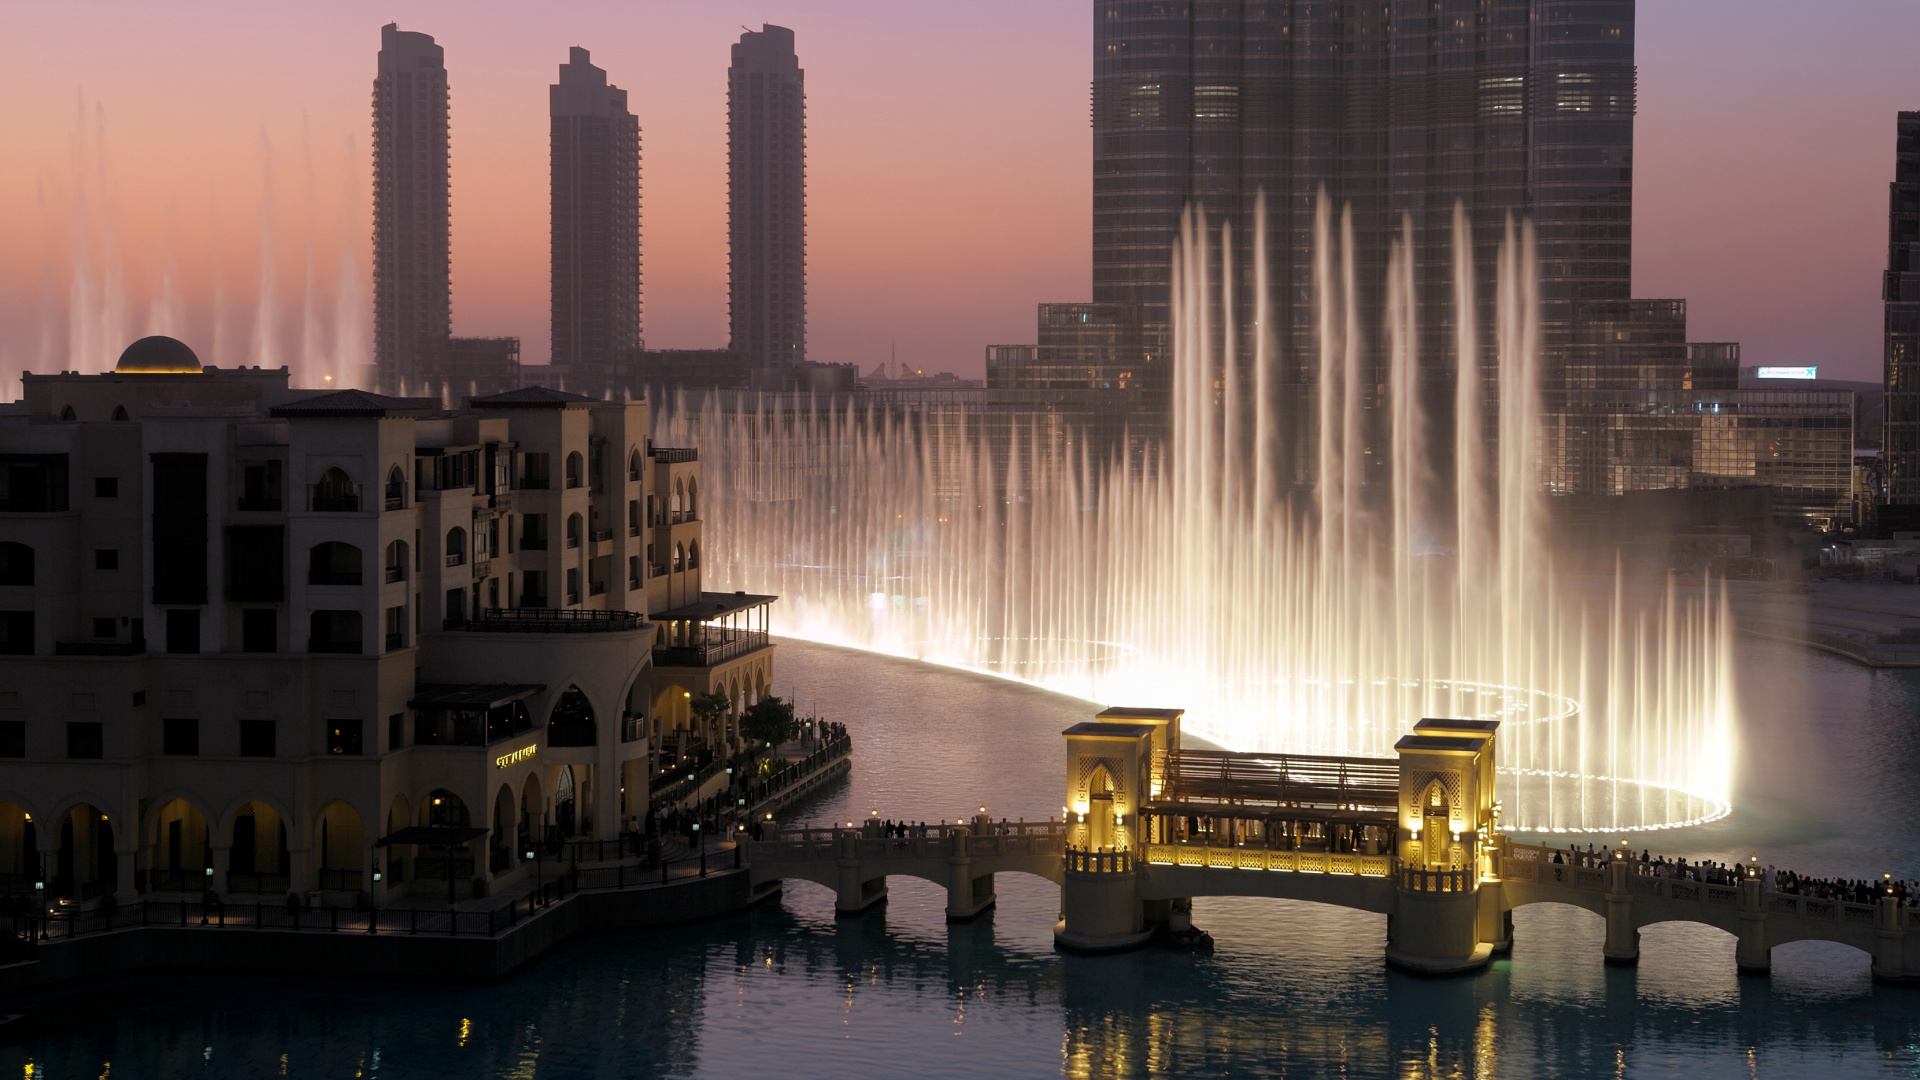 迪拜购物中心, 迪拜喷泉, 哈利法塔, 城市, 里程碑 壁纸 1920x1080 允许